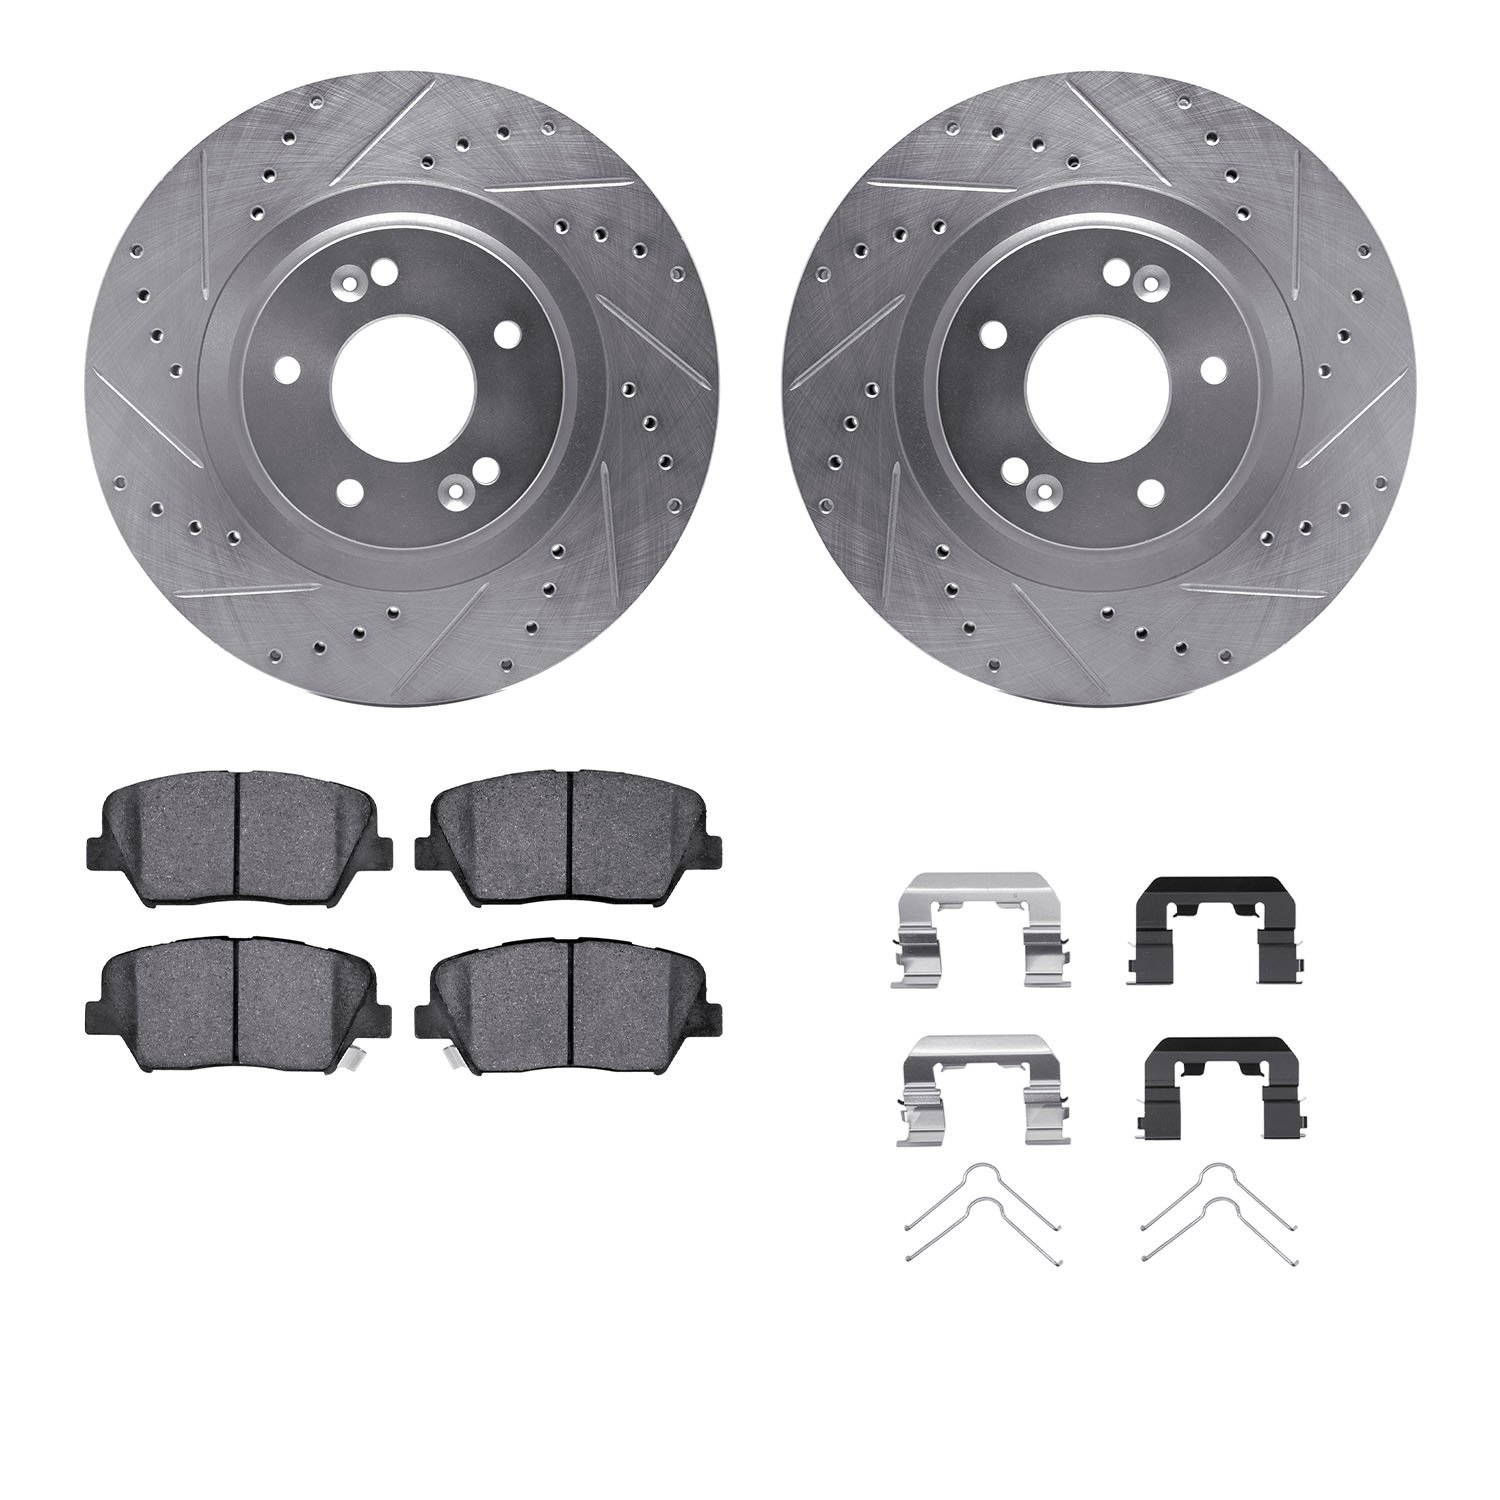 7312-21039 Drilled/Slotted Brake Rotor with 3000-Series Ceramic Brake Pads Kit & Hardware [Silver], 2015-2020 Kia/Hyundai/Genesi